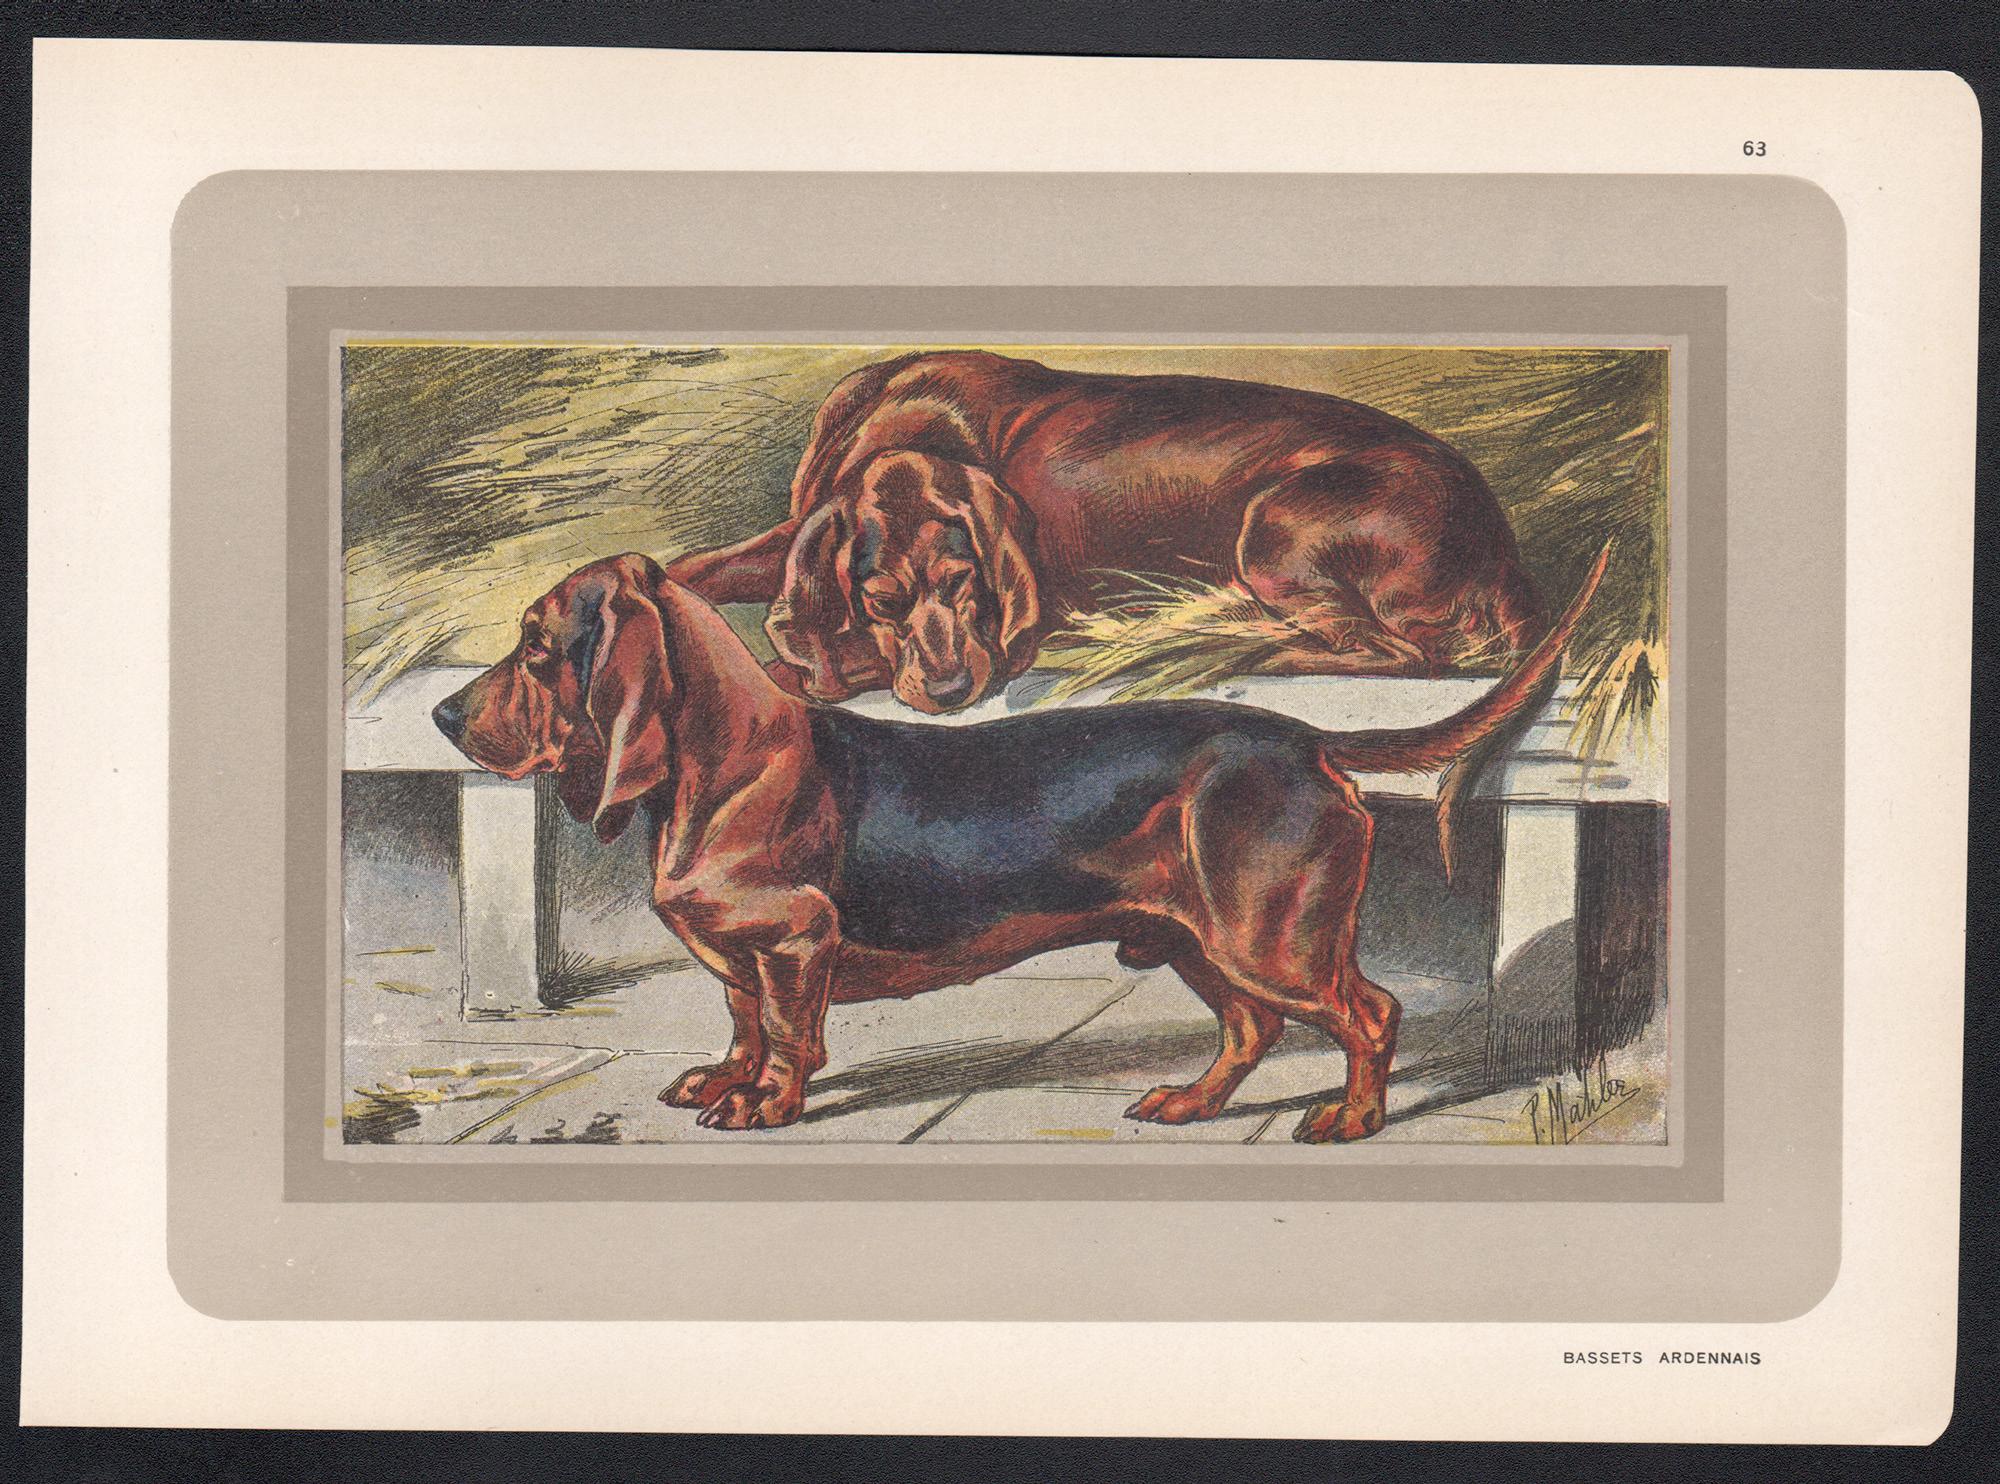 Bassets Ardennais, impression chromolithographie française d'un chien de chasse, années 1930 - Print de P. Mahler